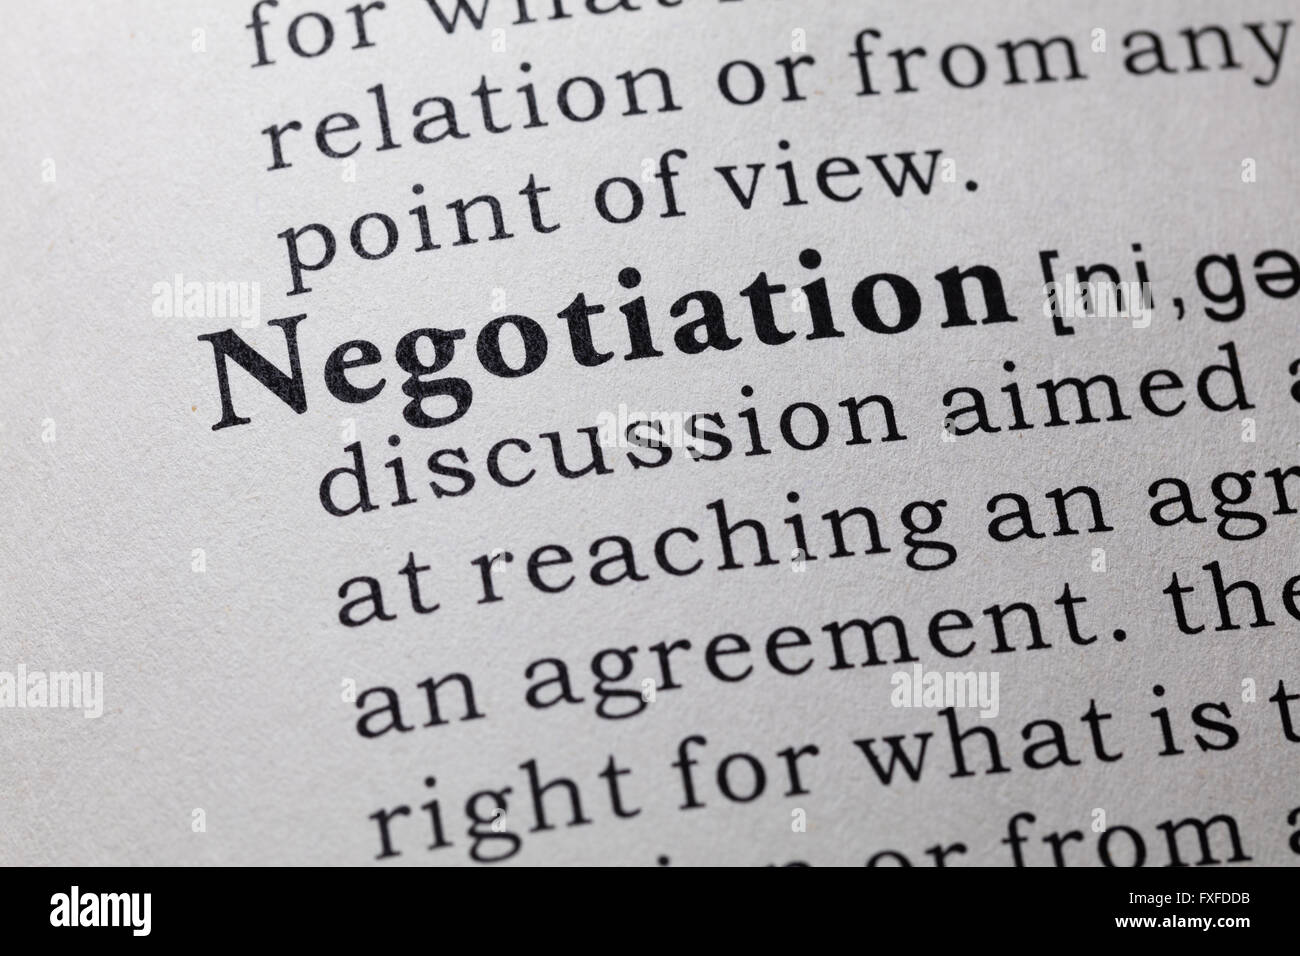 Fake Dizionario, definizione del dizionario della parola negoziazione. Foto Stock